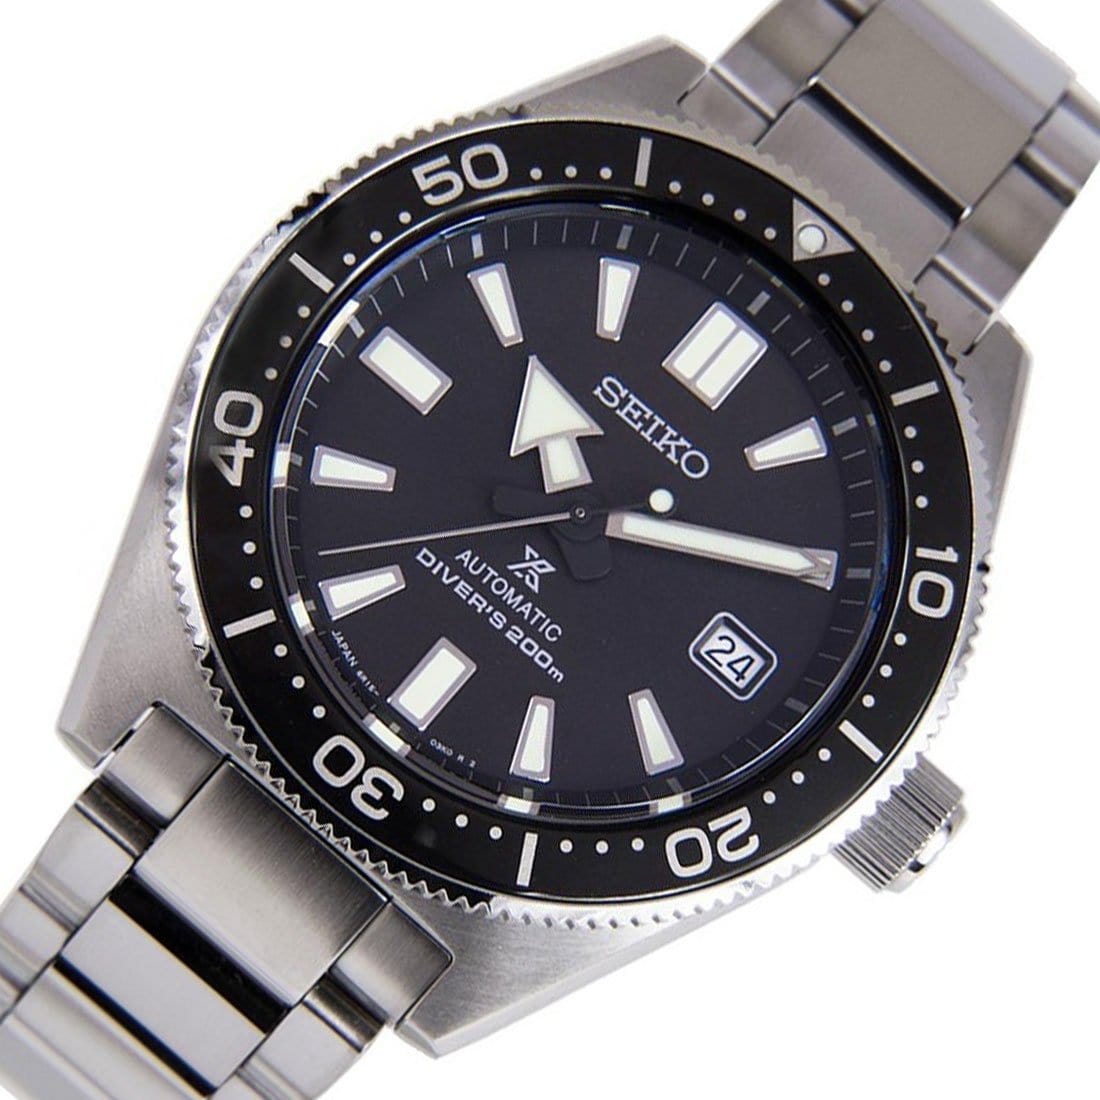 Seiko Prospex Automatic Diver 200M JDM Men's Watch SBDC051